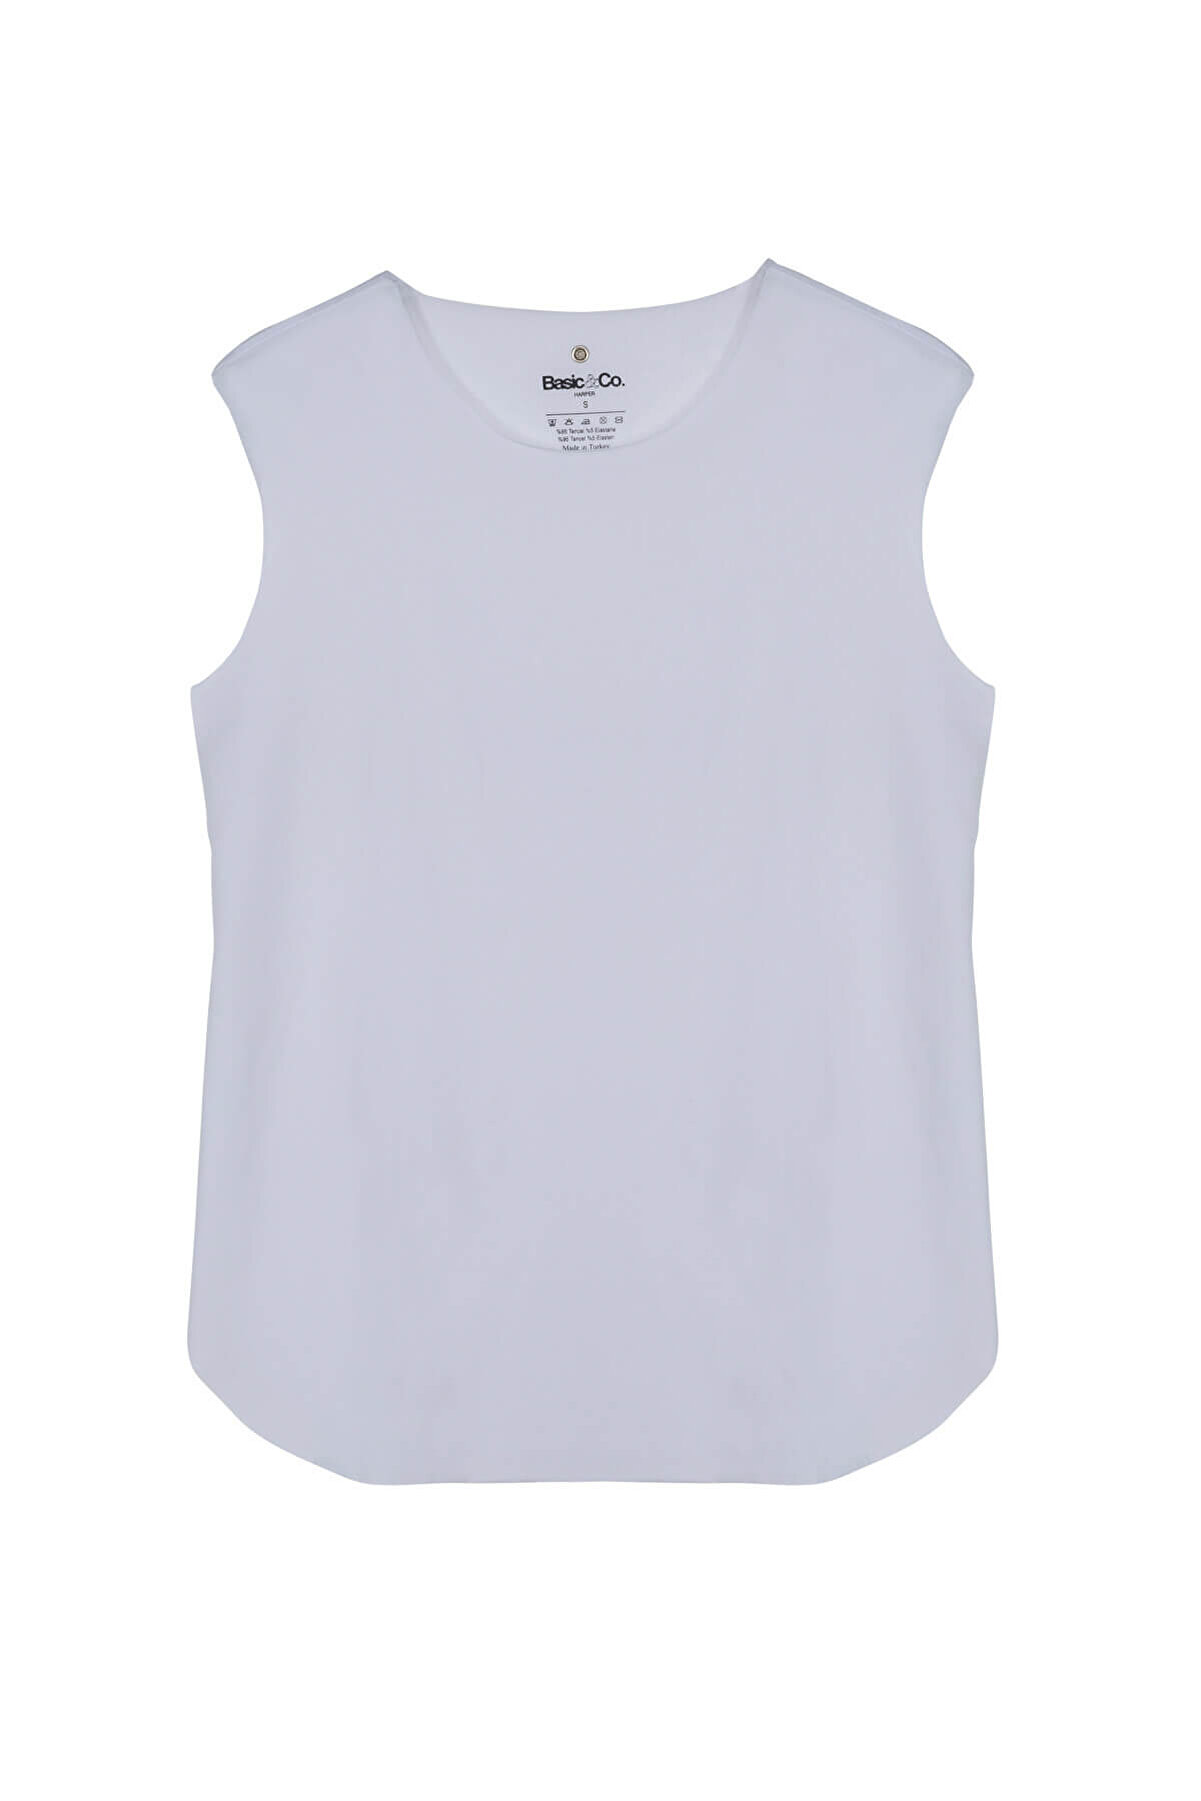 Basic Co Kadın Beyaz T-Shirt HRP002